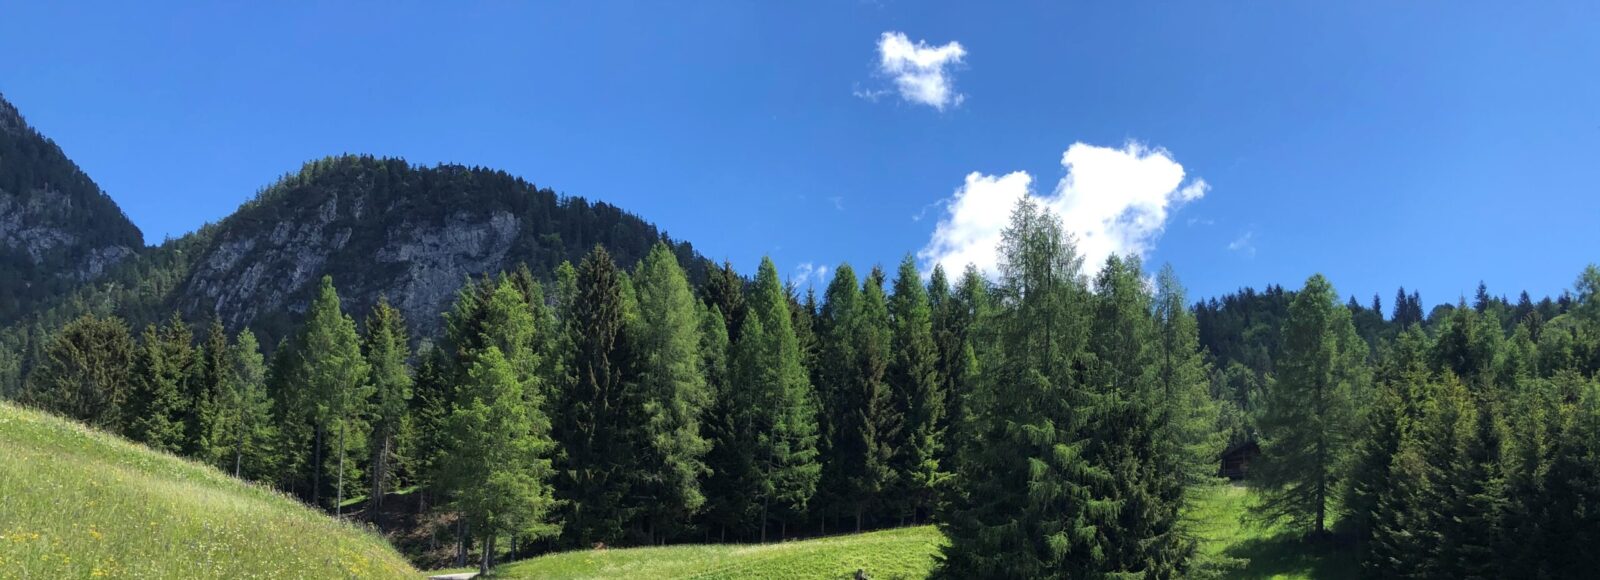 Sentiero facile in Trentino